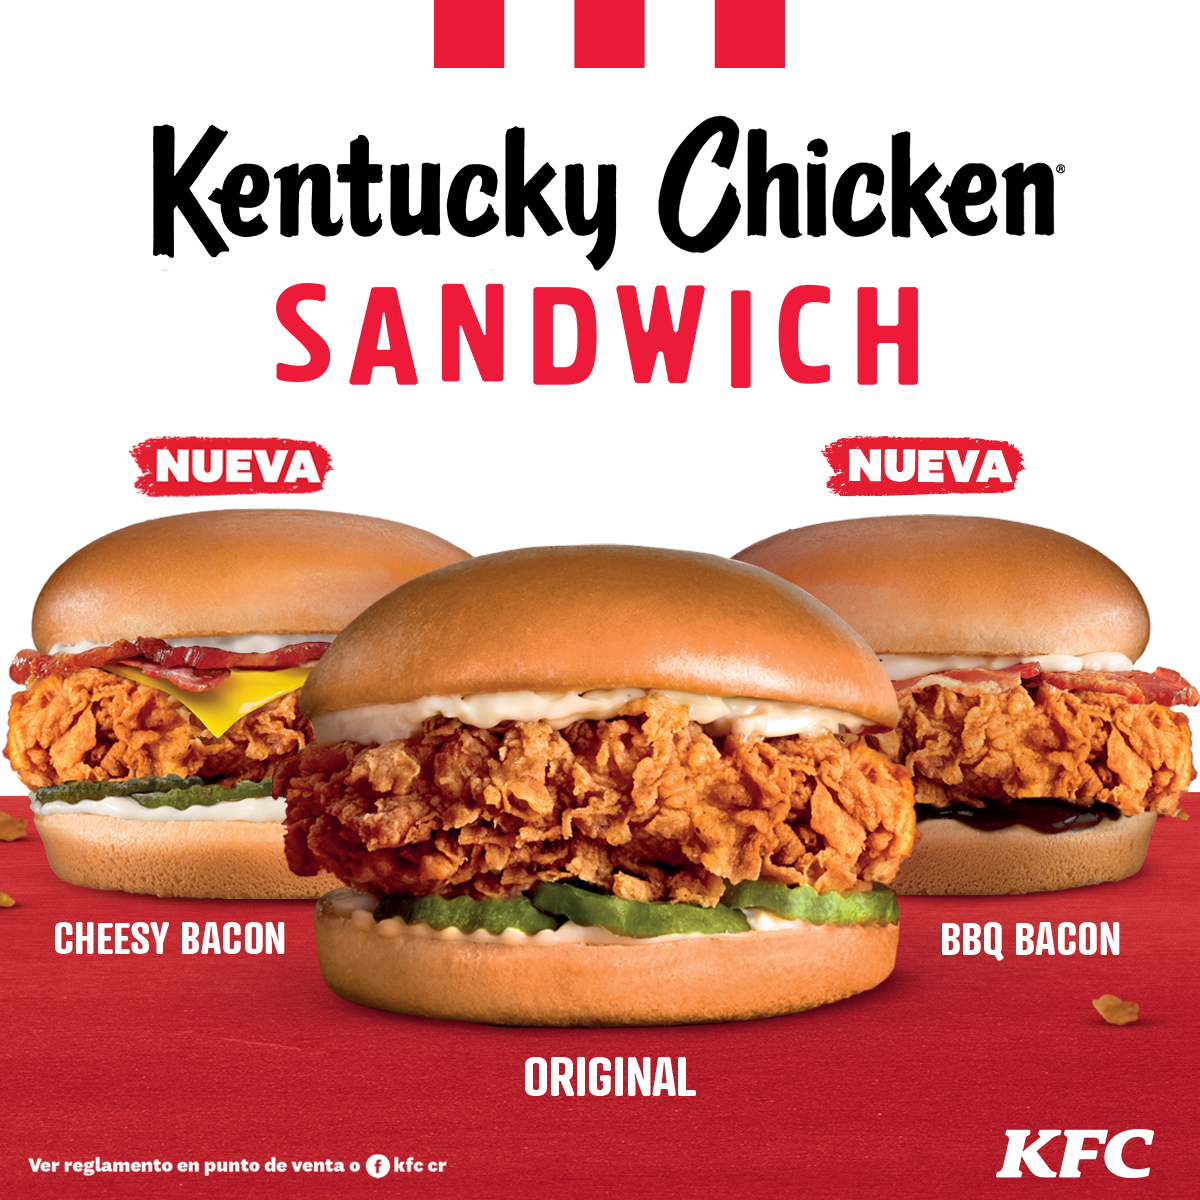 Kentucky Chicken Sandwich